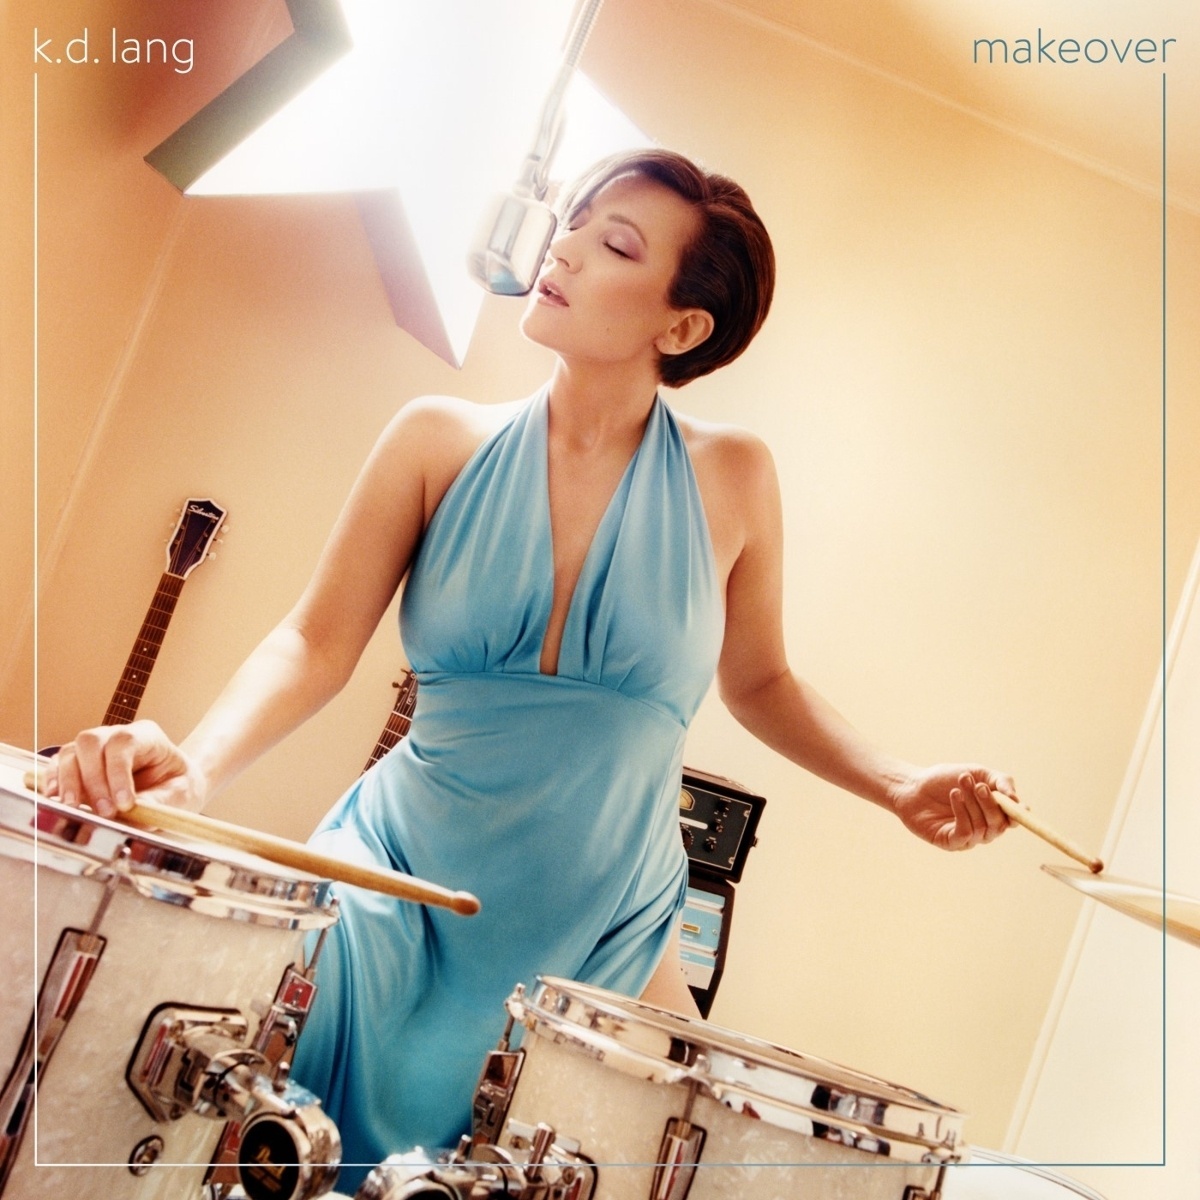 Makeover (Vinyl) - K.d. Lang. (LP)